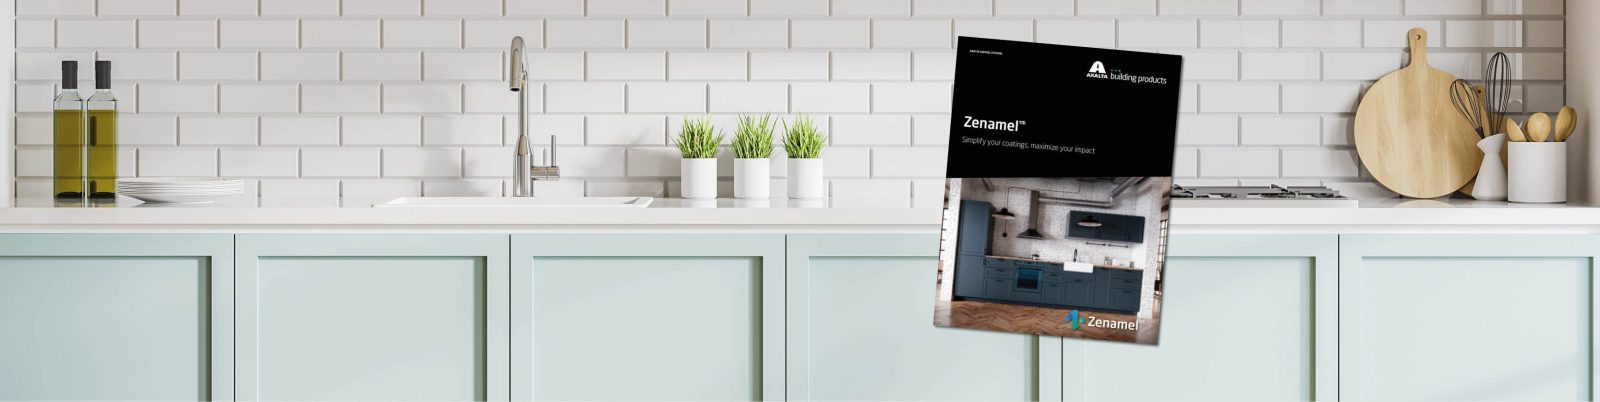 Zenamel™ Press Release